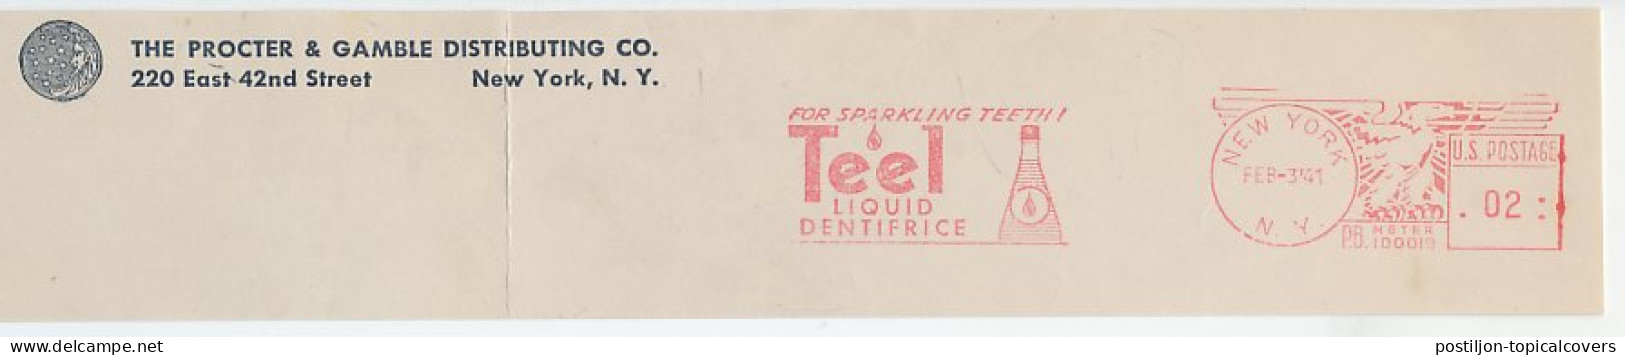 Meter Top Cut USA 1941 Liquid Dentifrice - Teel - Geneeskunde